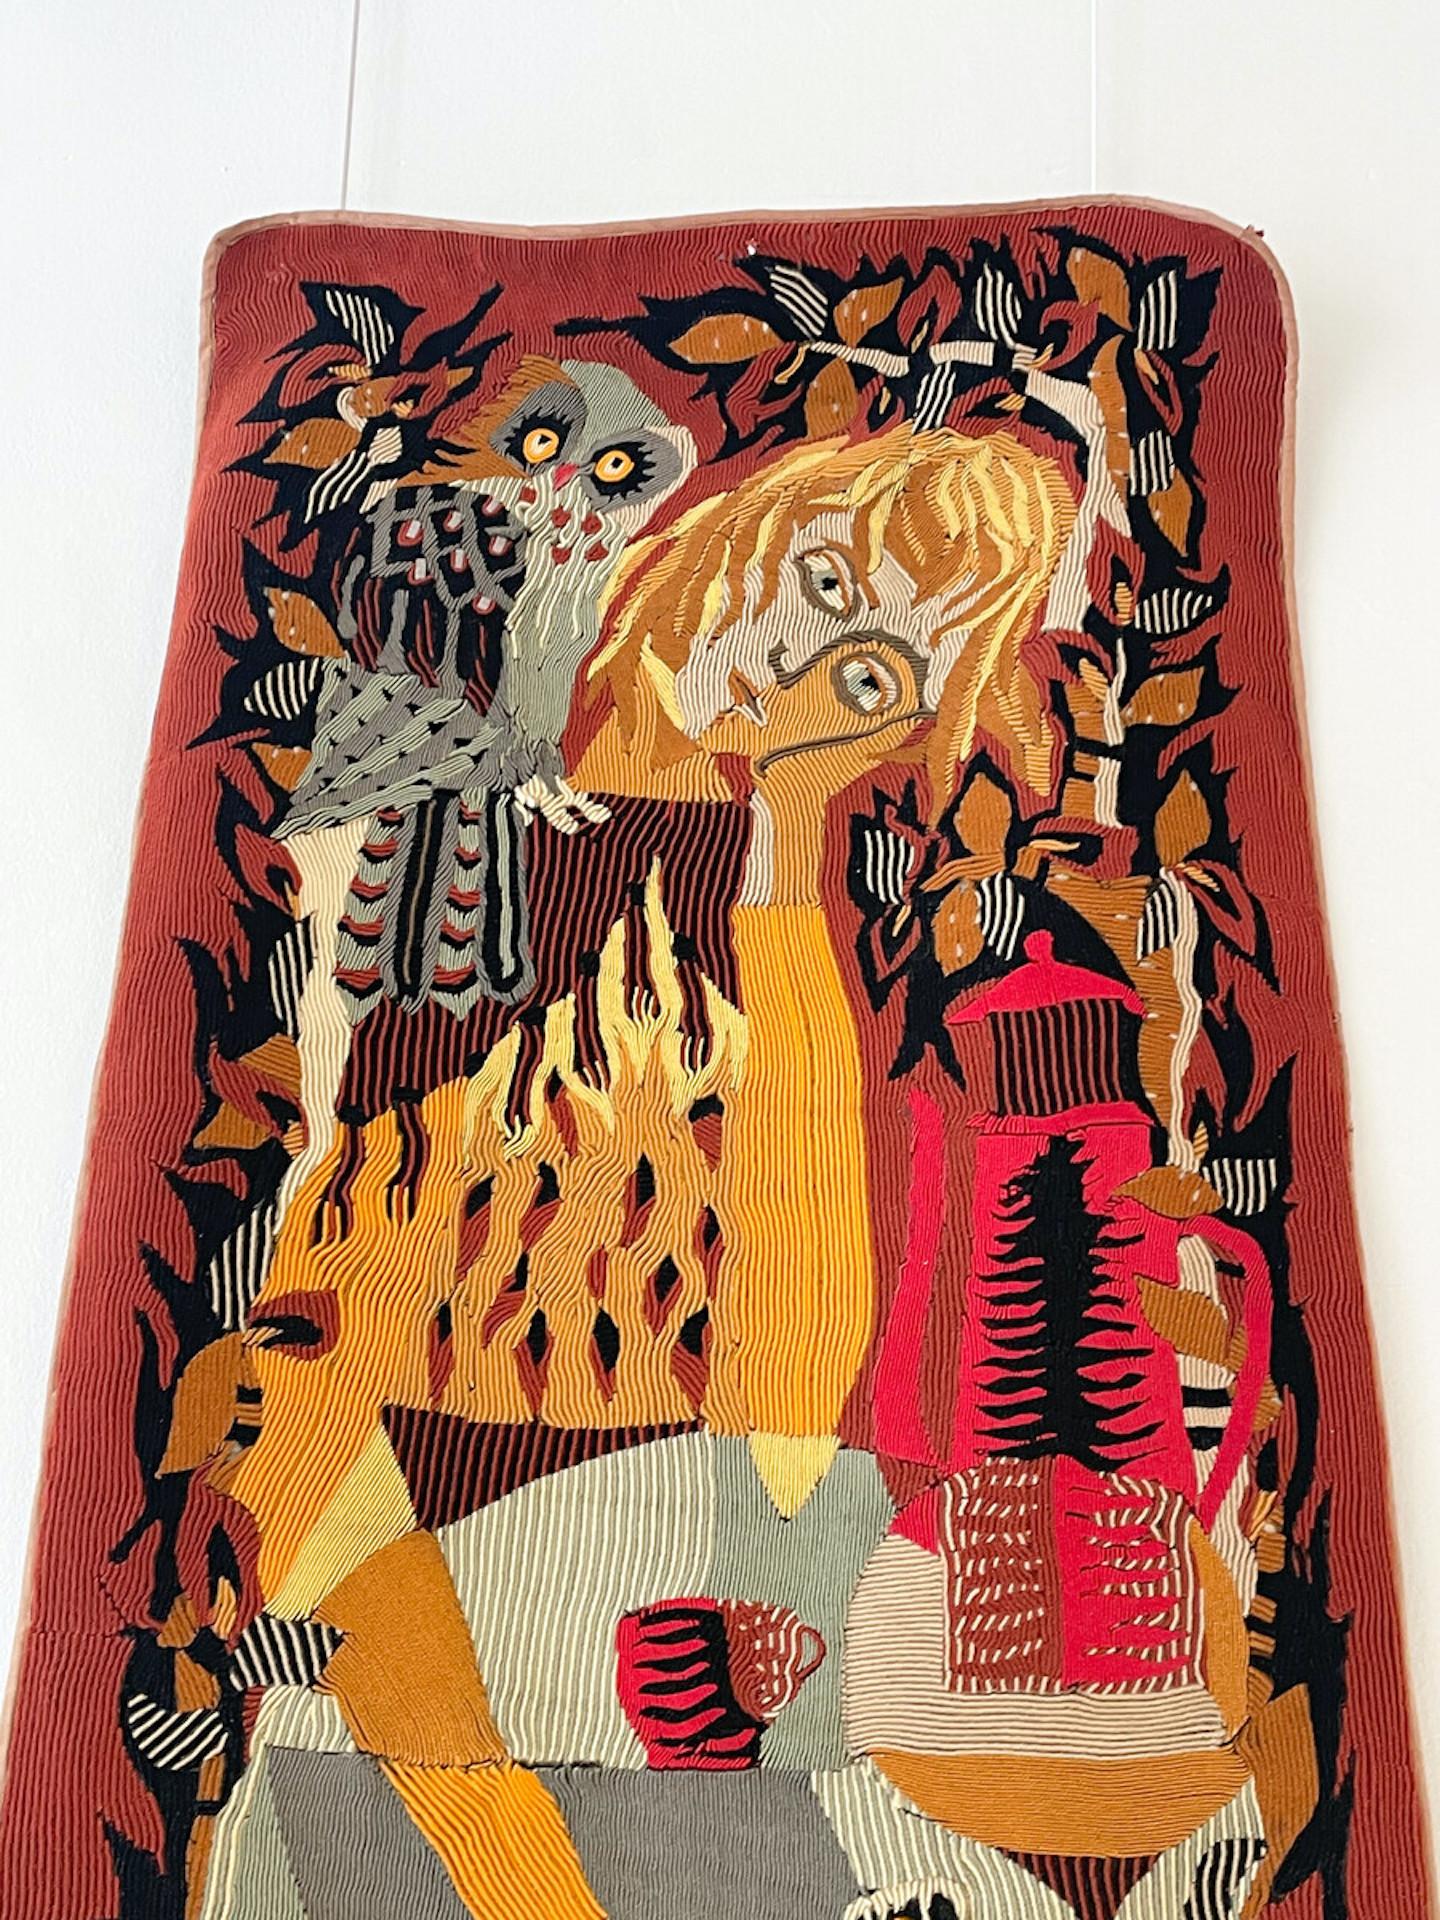 Wandteppich aus Wolle von Michèle Ray, Frankreich, 1960er Jahre - signiert und nummeriert.